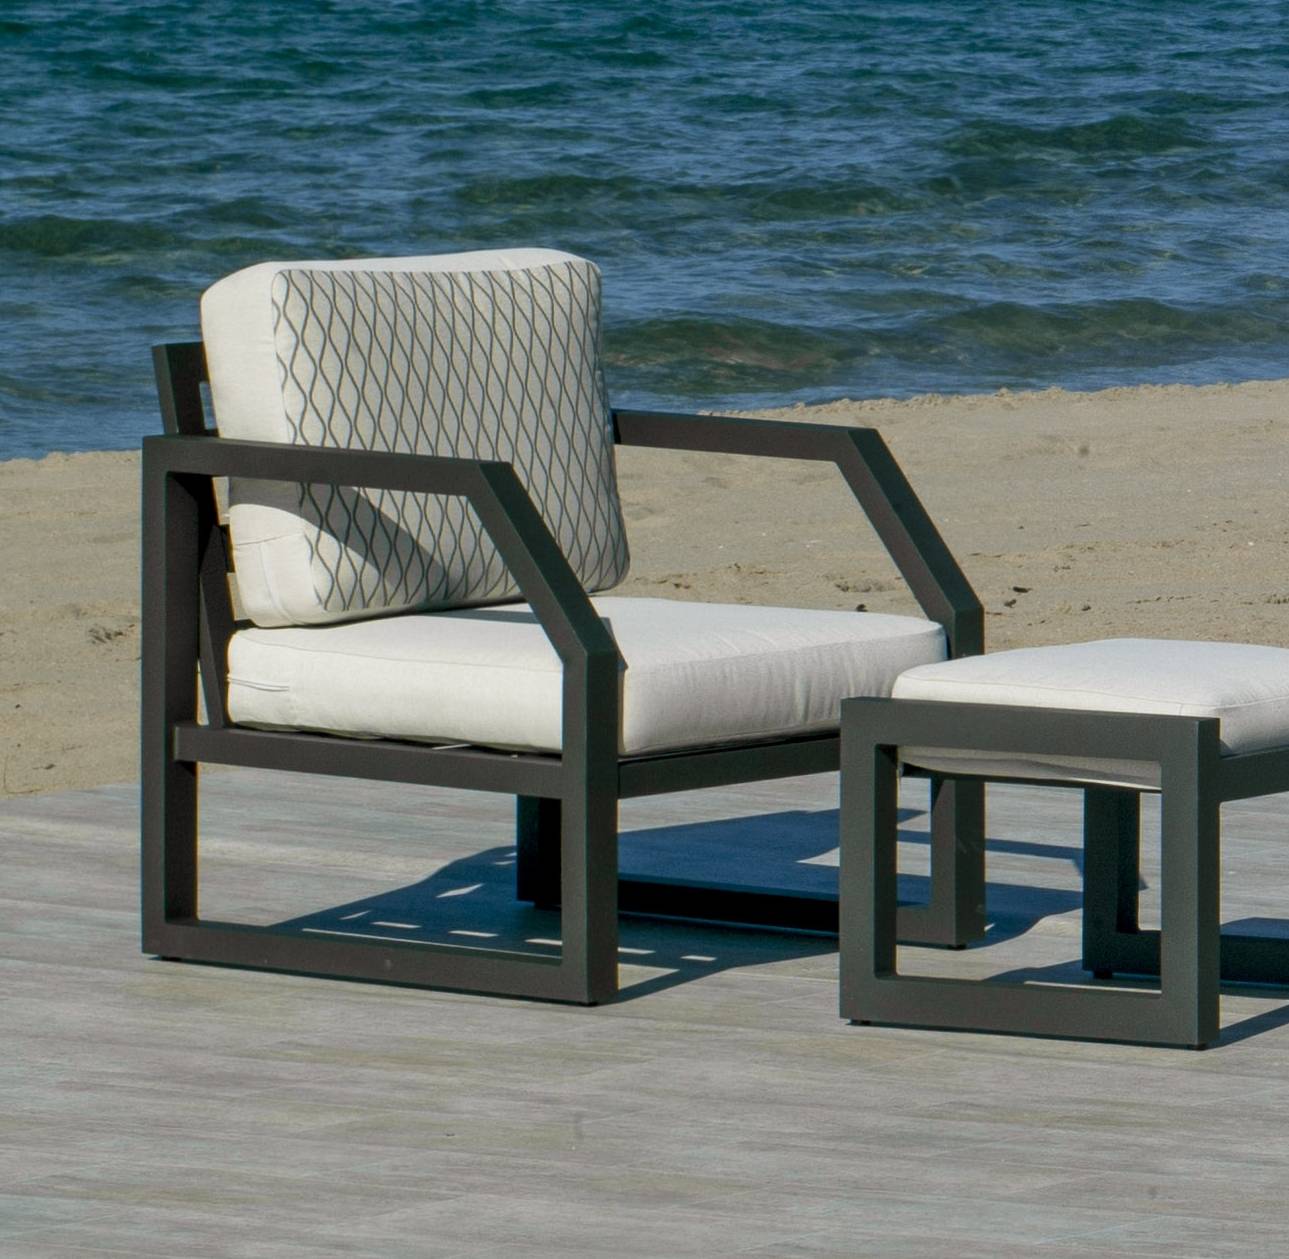 Set Aluminio Luxe Bellagio-9 - Conjunto aluminio: 1 sofá 2 plazas + 2 sillones + mesa de centro + 2 taburetes + cojines. Colores: blanco, antracita o champagne.